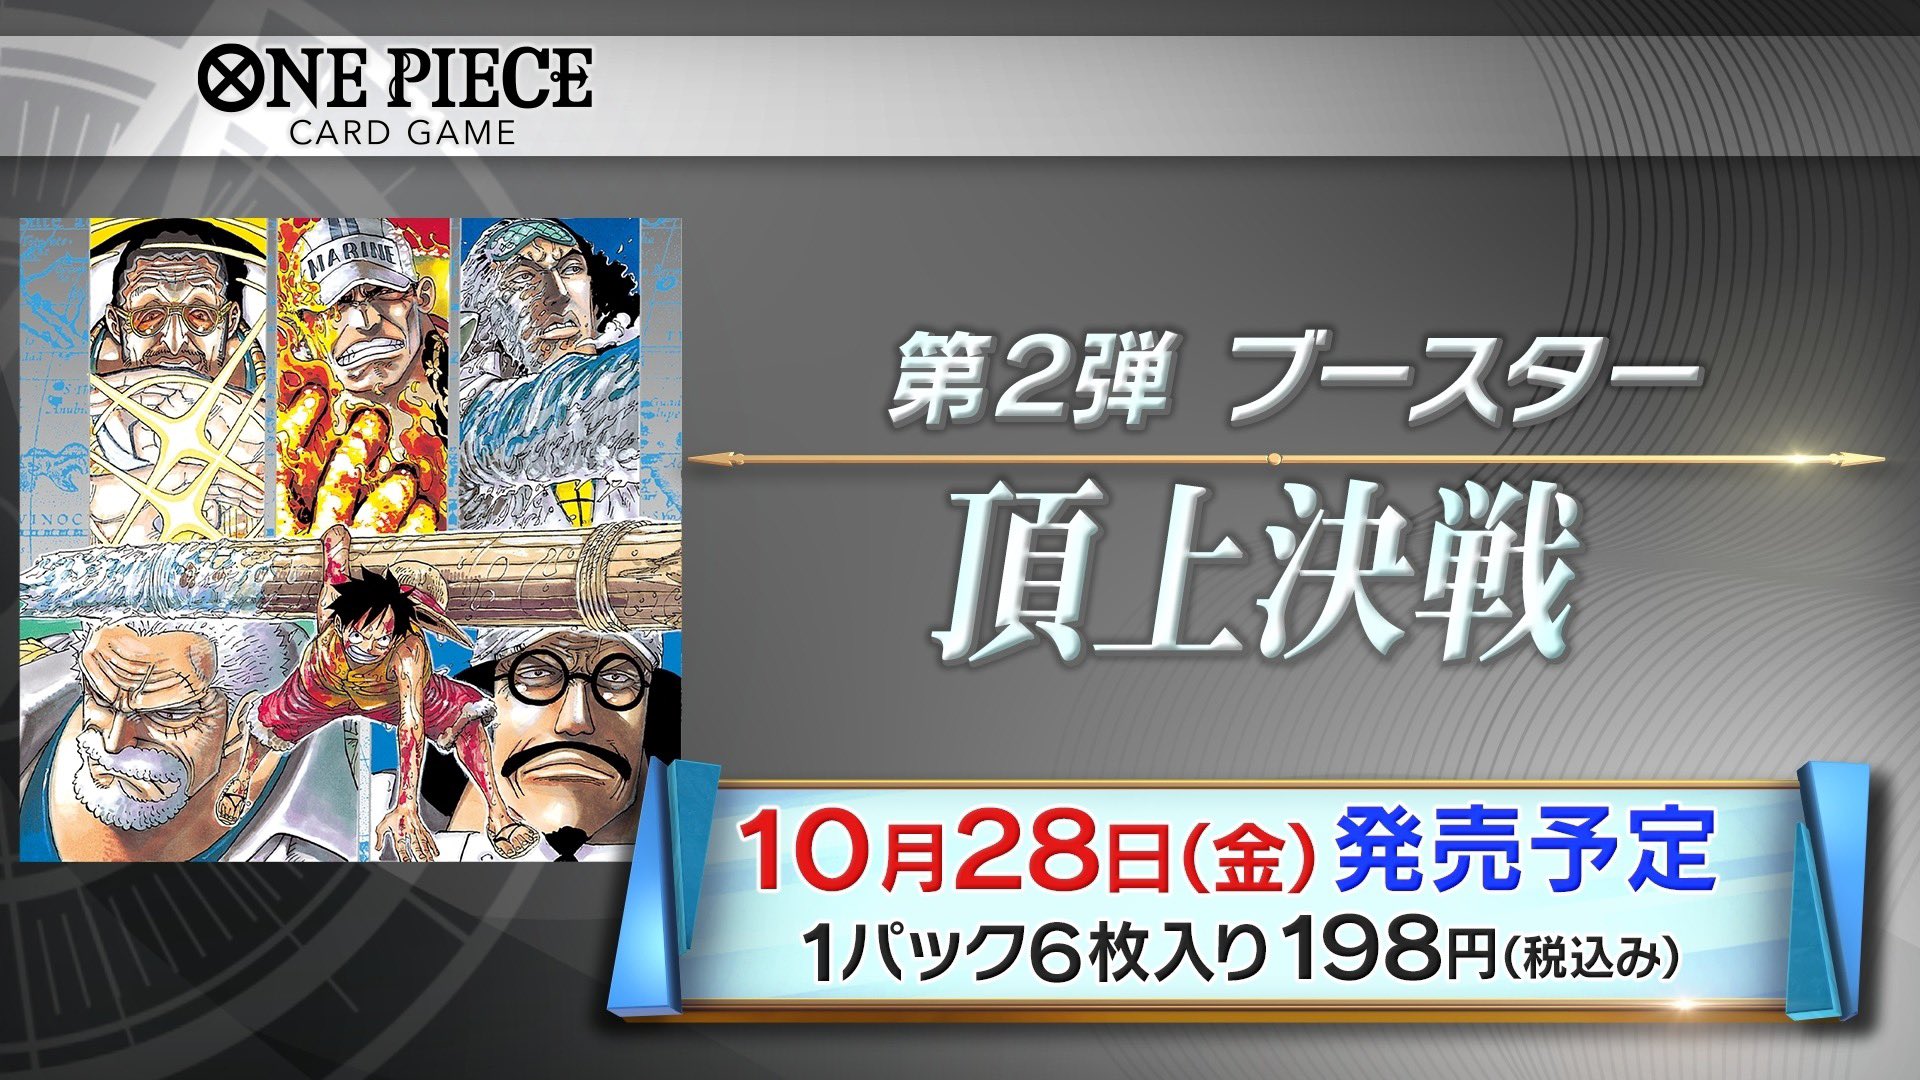 One Piece スタッフ 公式 Official Onepieceカードゲーム 7 14 5月31日 火 の生配信で解禁された 押さえておきたい情報を一挙紹介 10月28日 金 には ブースターパック 頂上戦争 が登場 エースや三大将もラインナップするかも 公式